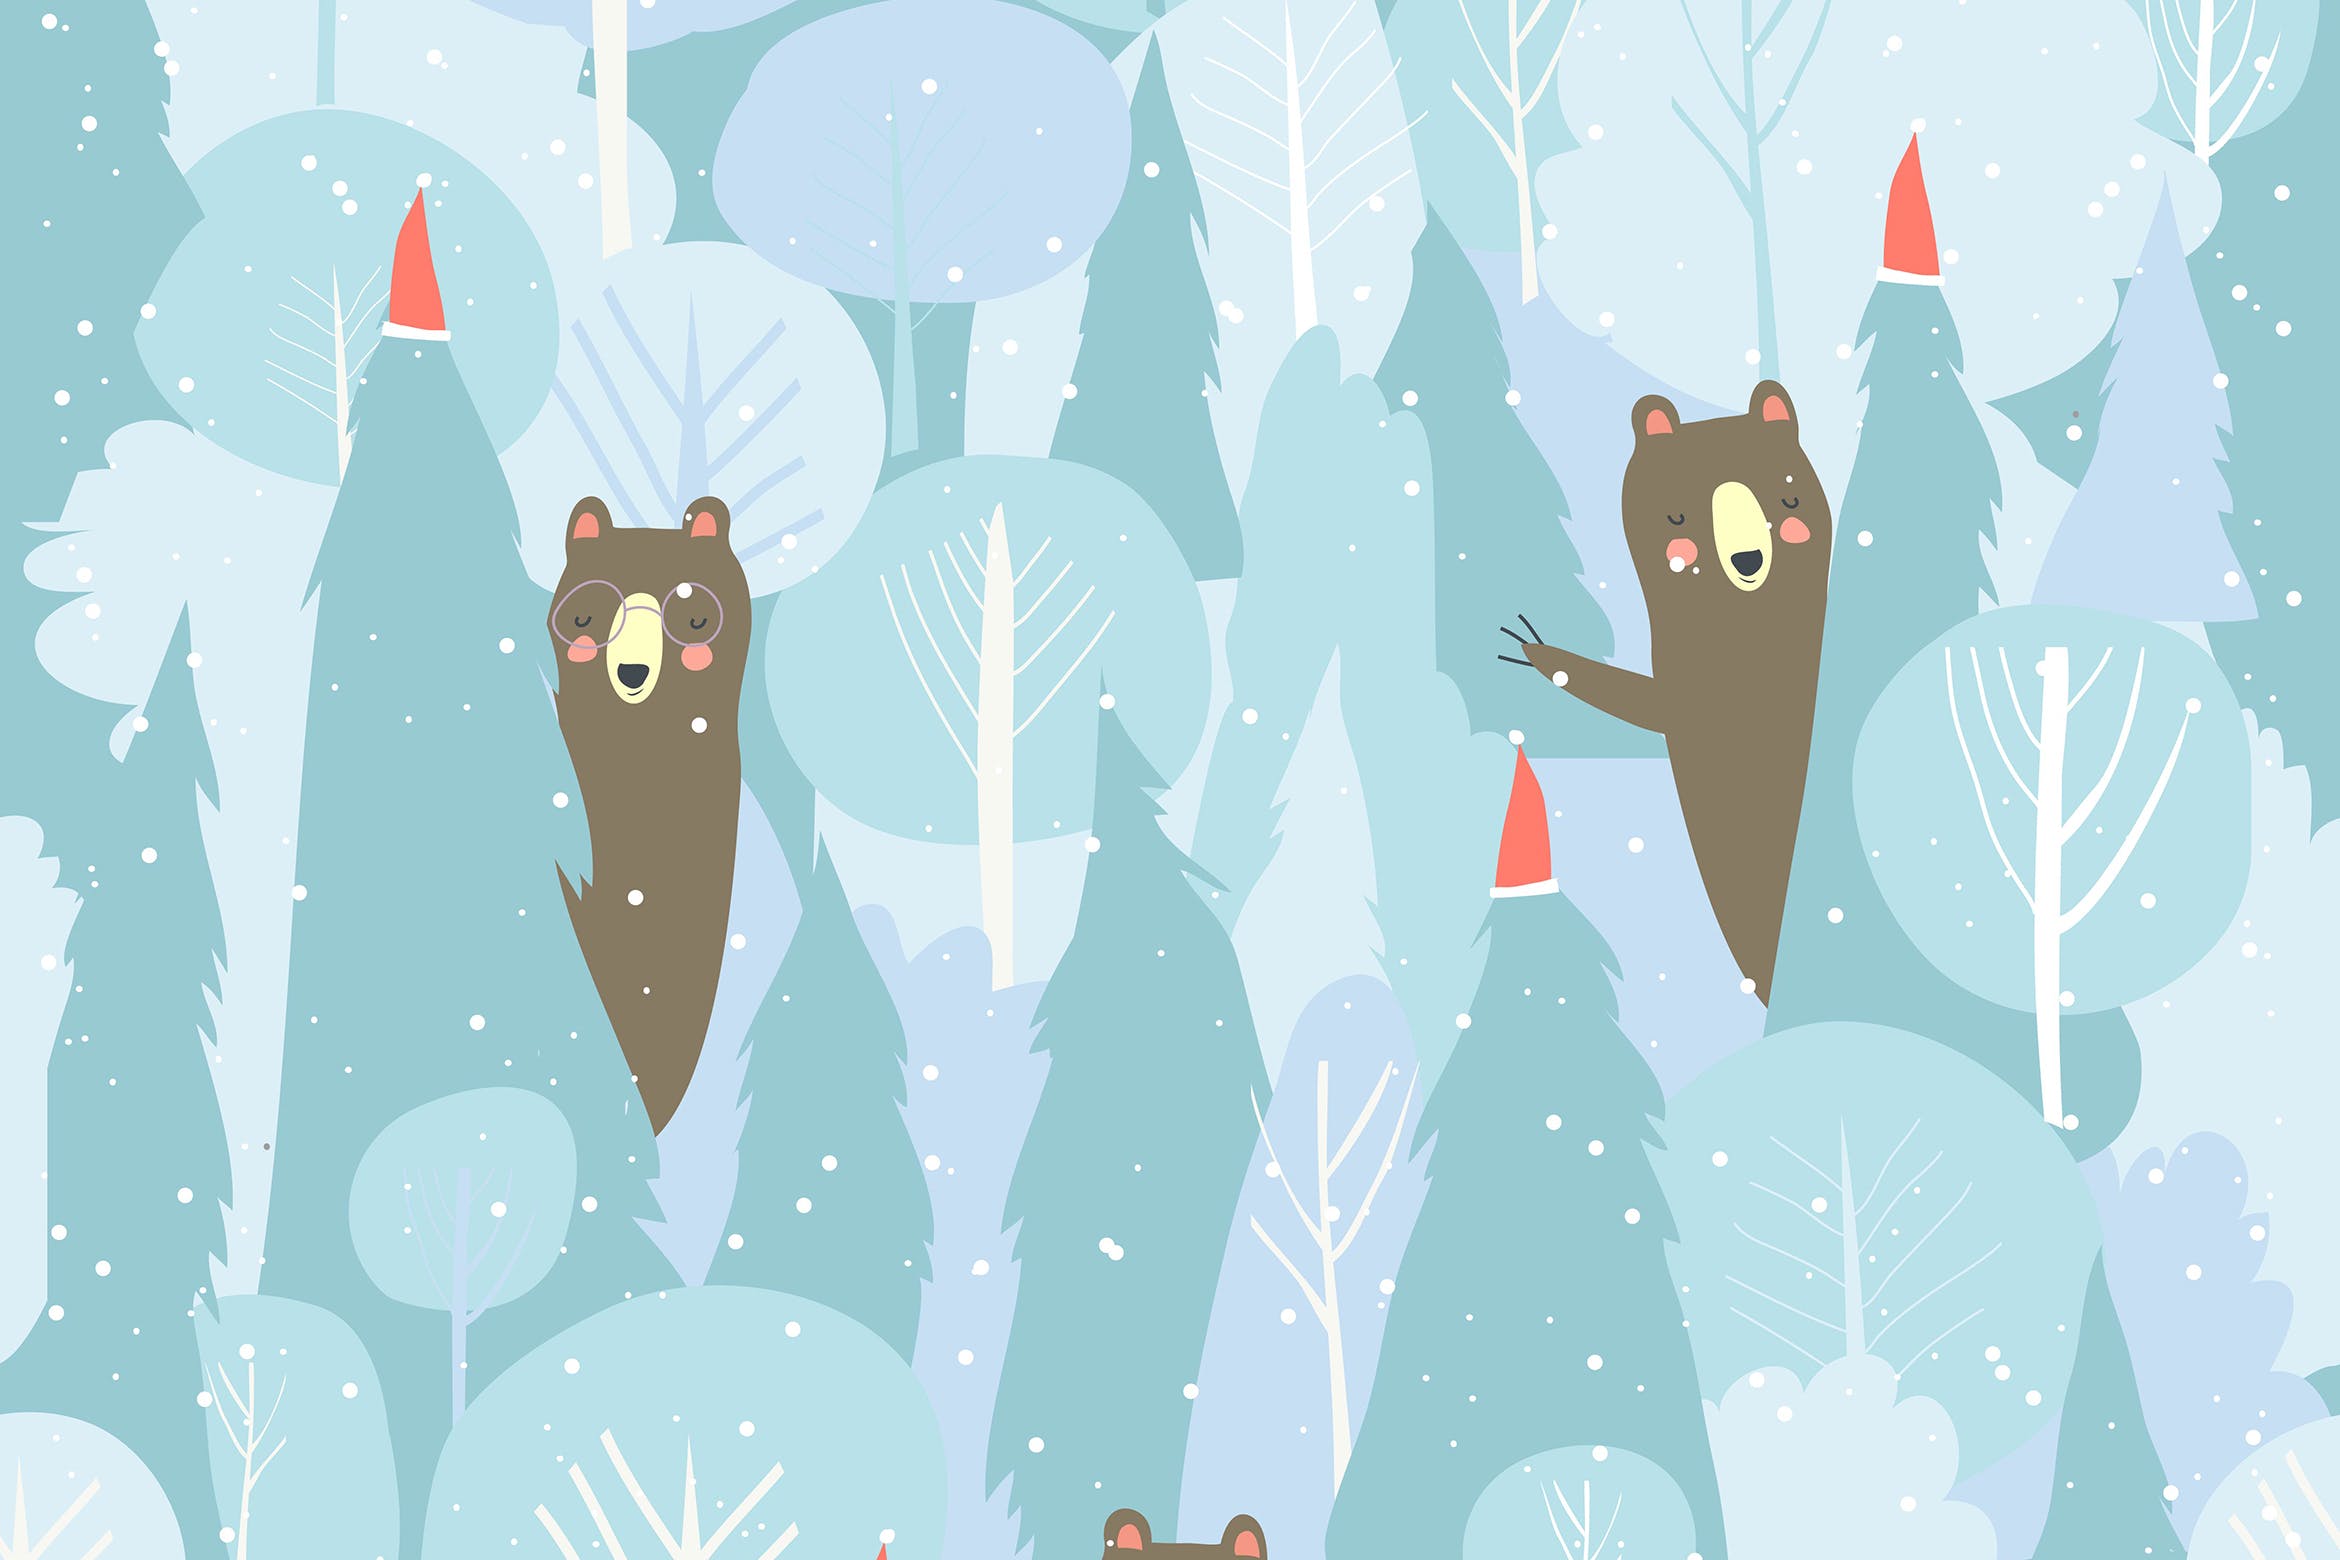 萌呆的卡通动物森林手绘无缝图案圣诞背景素材 Seamless vector winter forest pattern. Christmas b插图